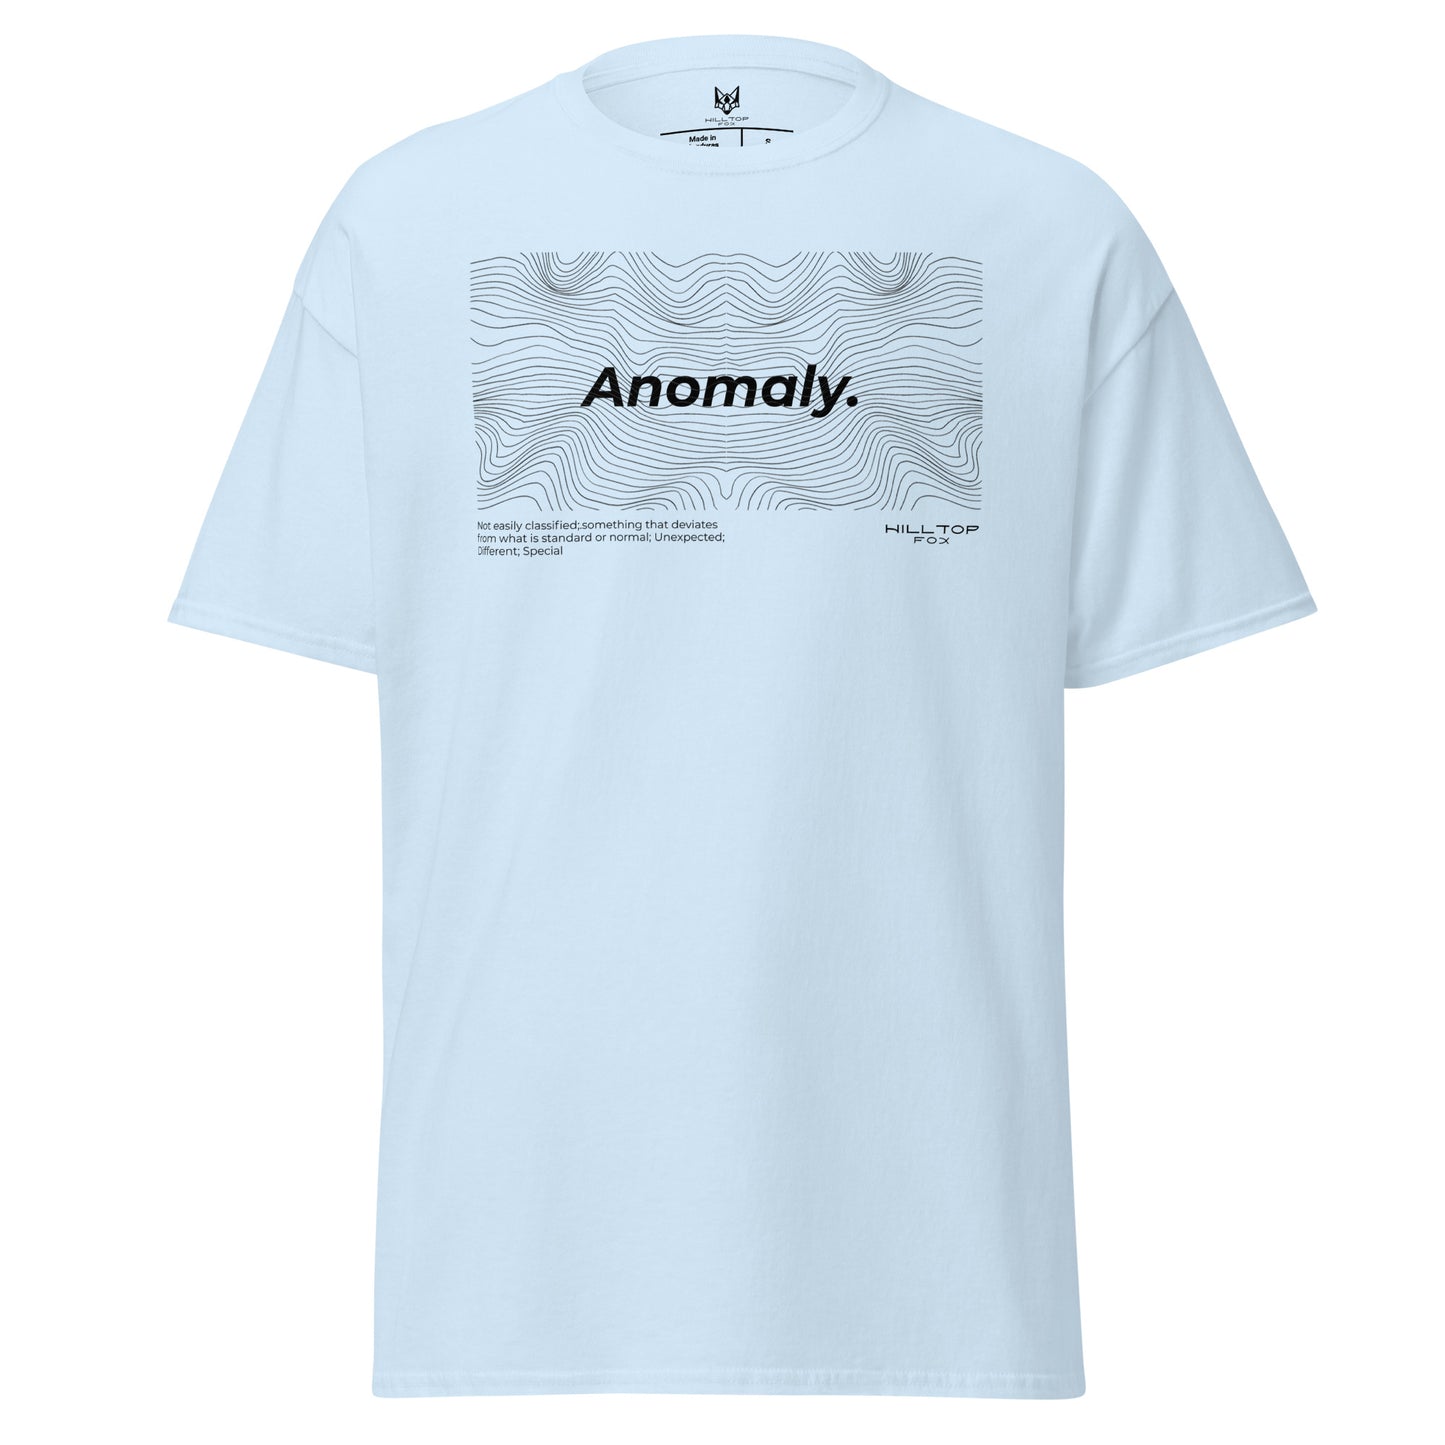 Camiseta de anomalía